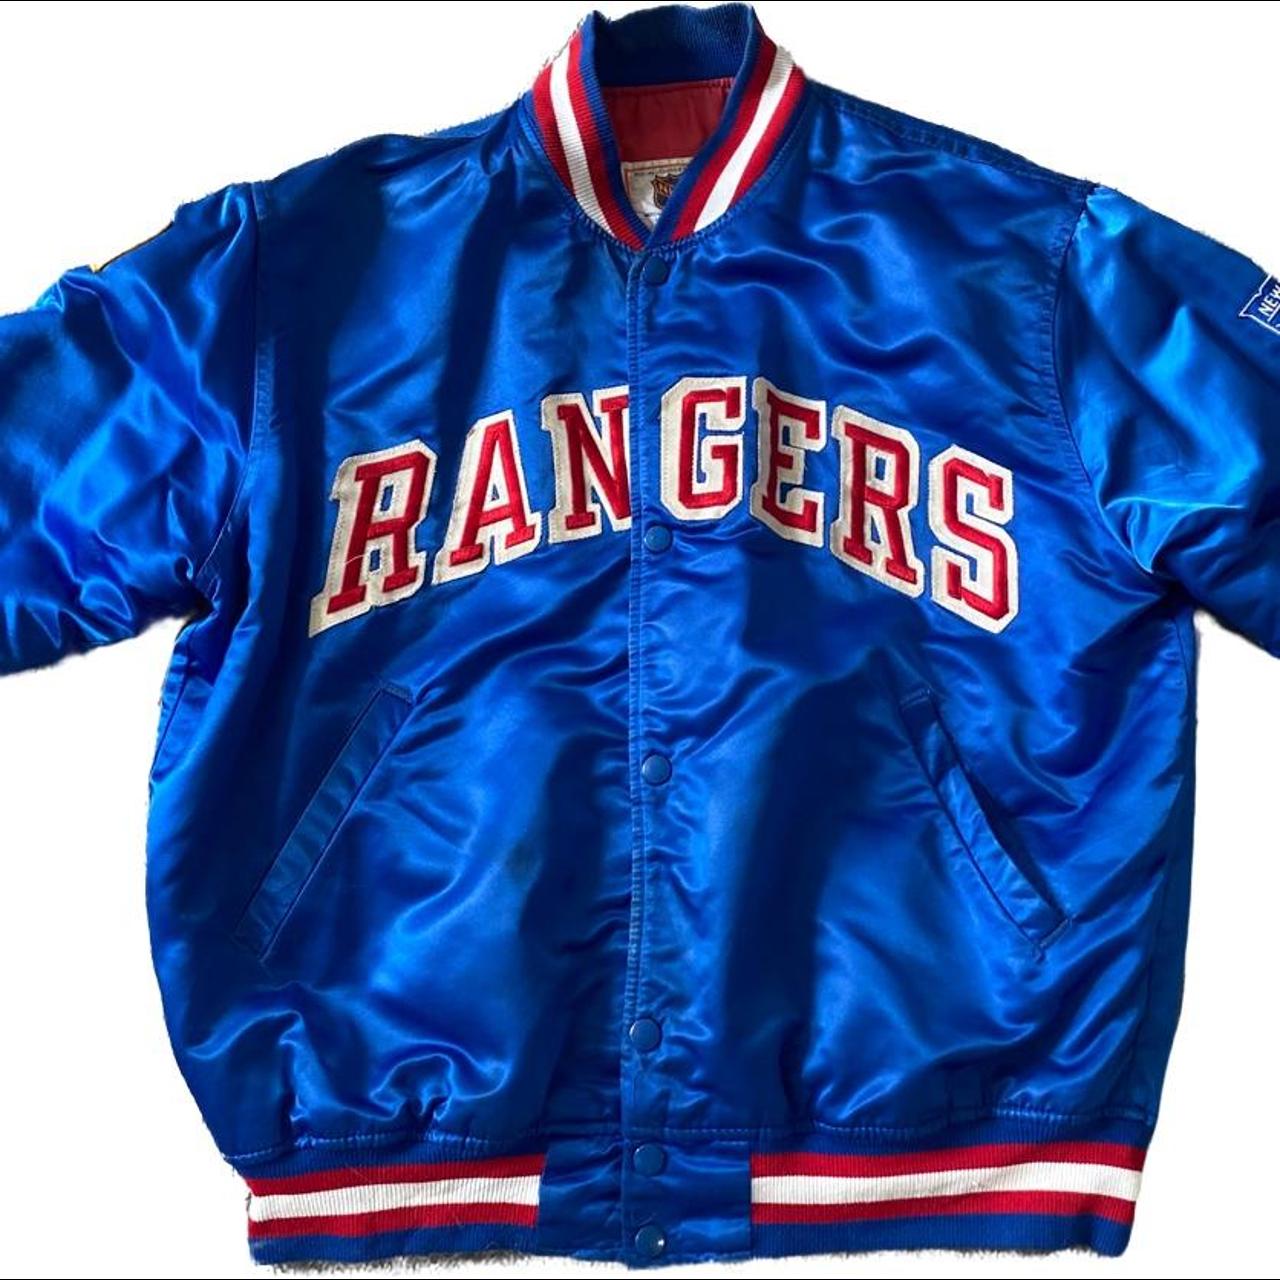 Vintage Vancouver Canucks starter Jacket 90s #nhl - Depop